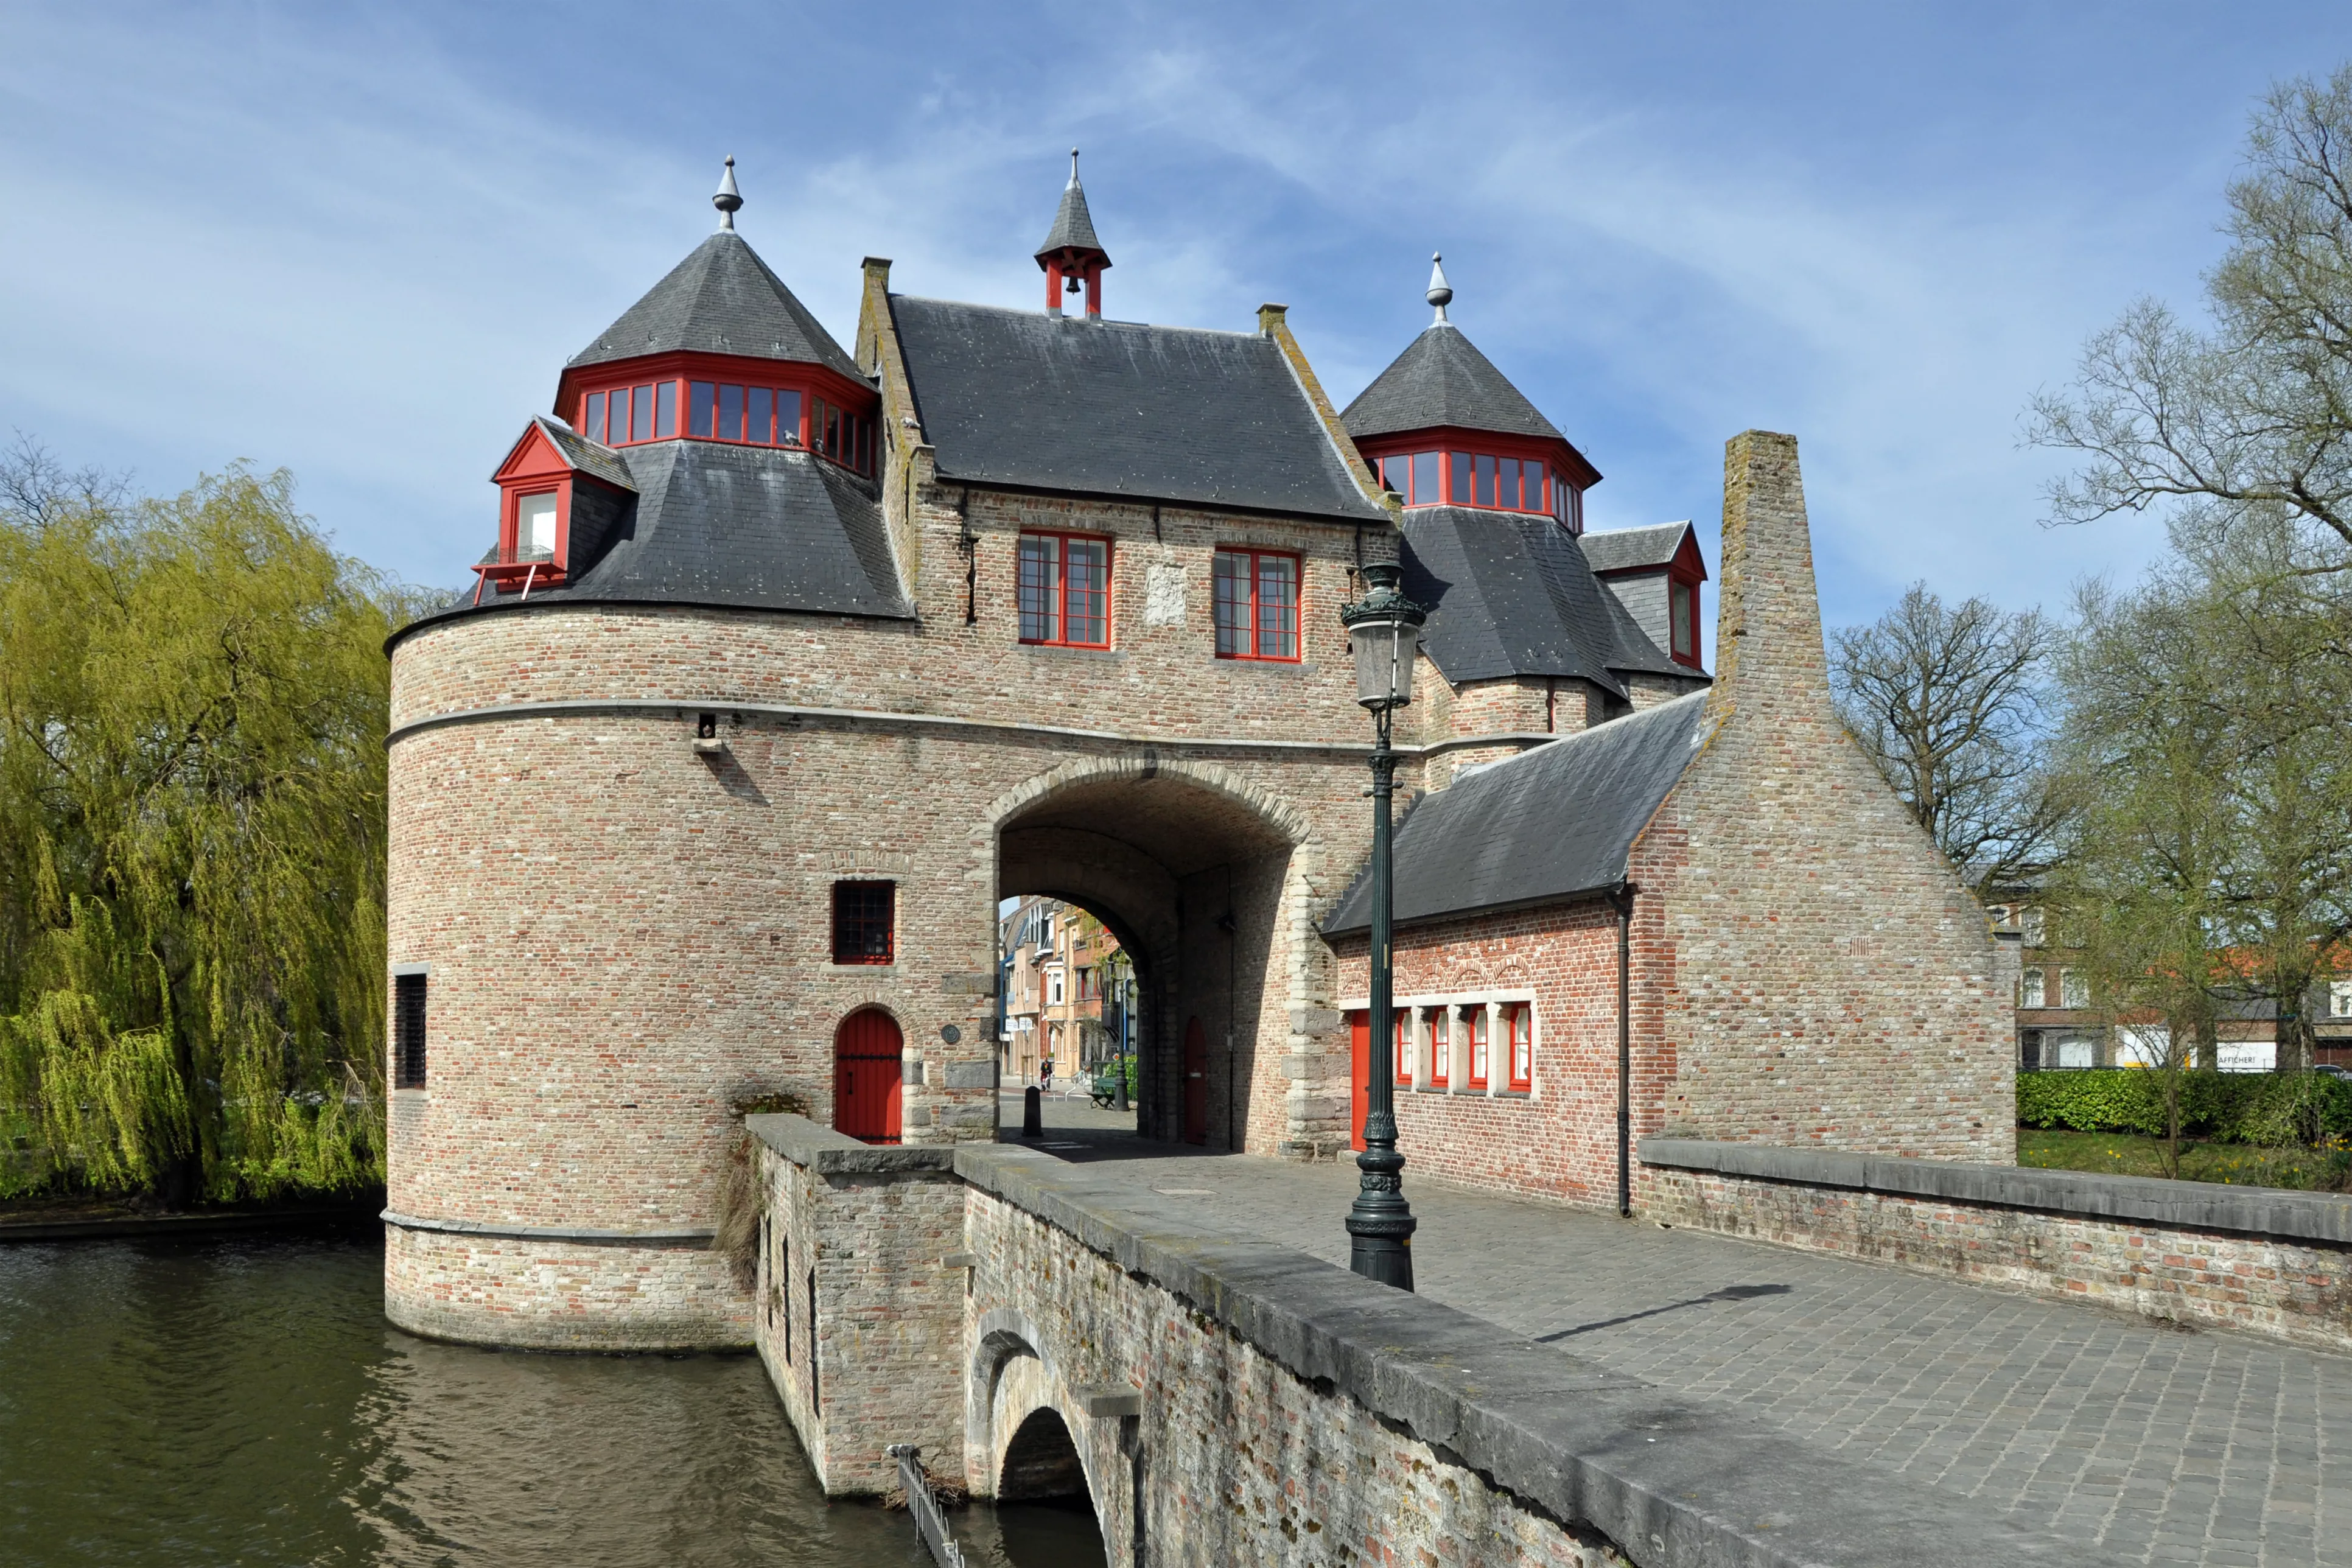 Ezelpoort in Belgium, Europe | Architecture - Rated 3.5